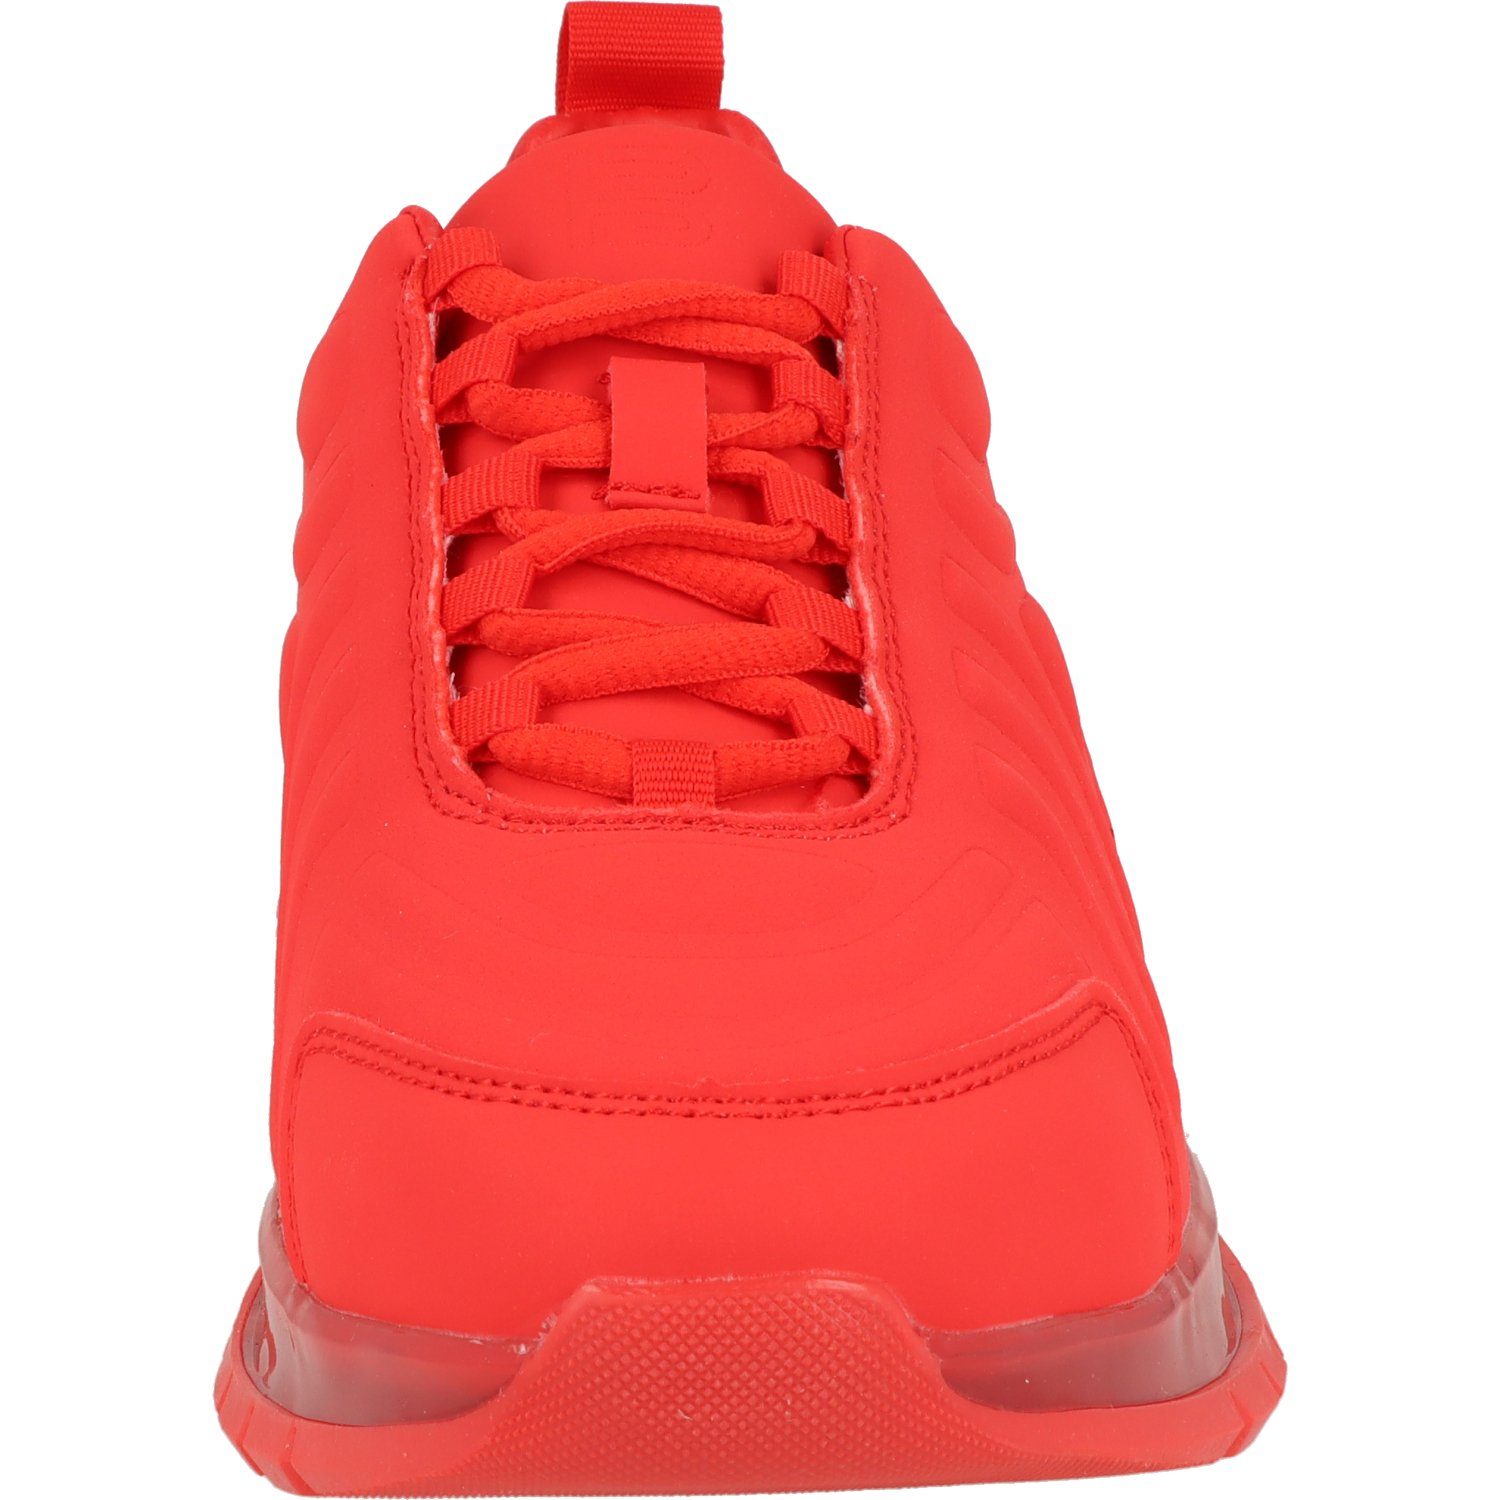 D31A7D115000 Schuhe Red BAGATT Halbschuhe Damen stylische Sneaker Schnürschuh Athena